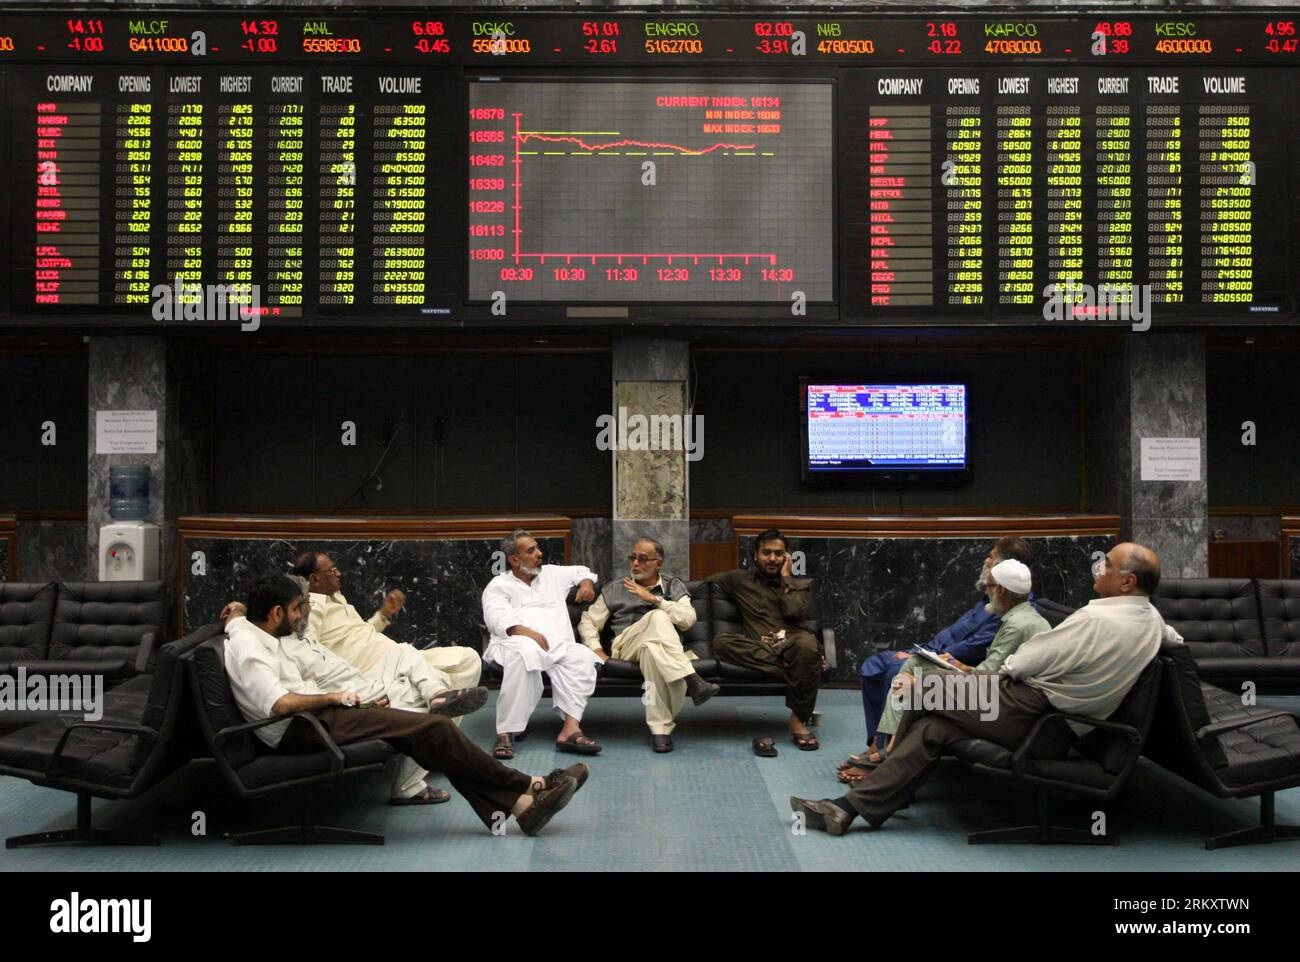 Bildnummer: 59085543 Datum: 15.01.2013 Copyright: imago/Xinhua KARACHI, 15  gennaio 2013 - gli agenti di borsa pakistani chiacchierano mentre si  siedono sotto uno schermo digitale che mostra i prezzi delle azioni durante  una